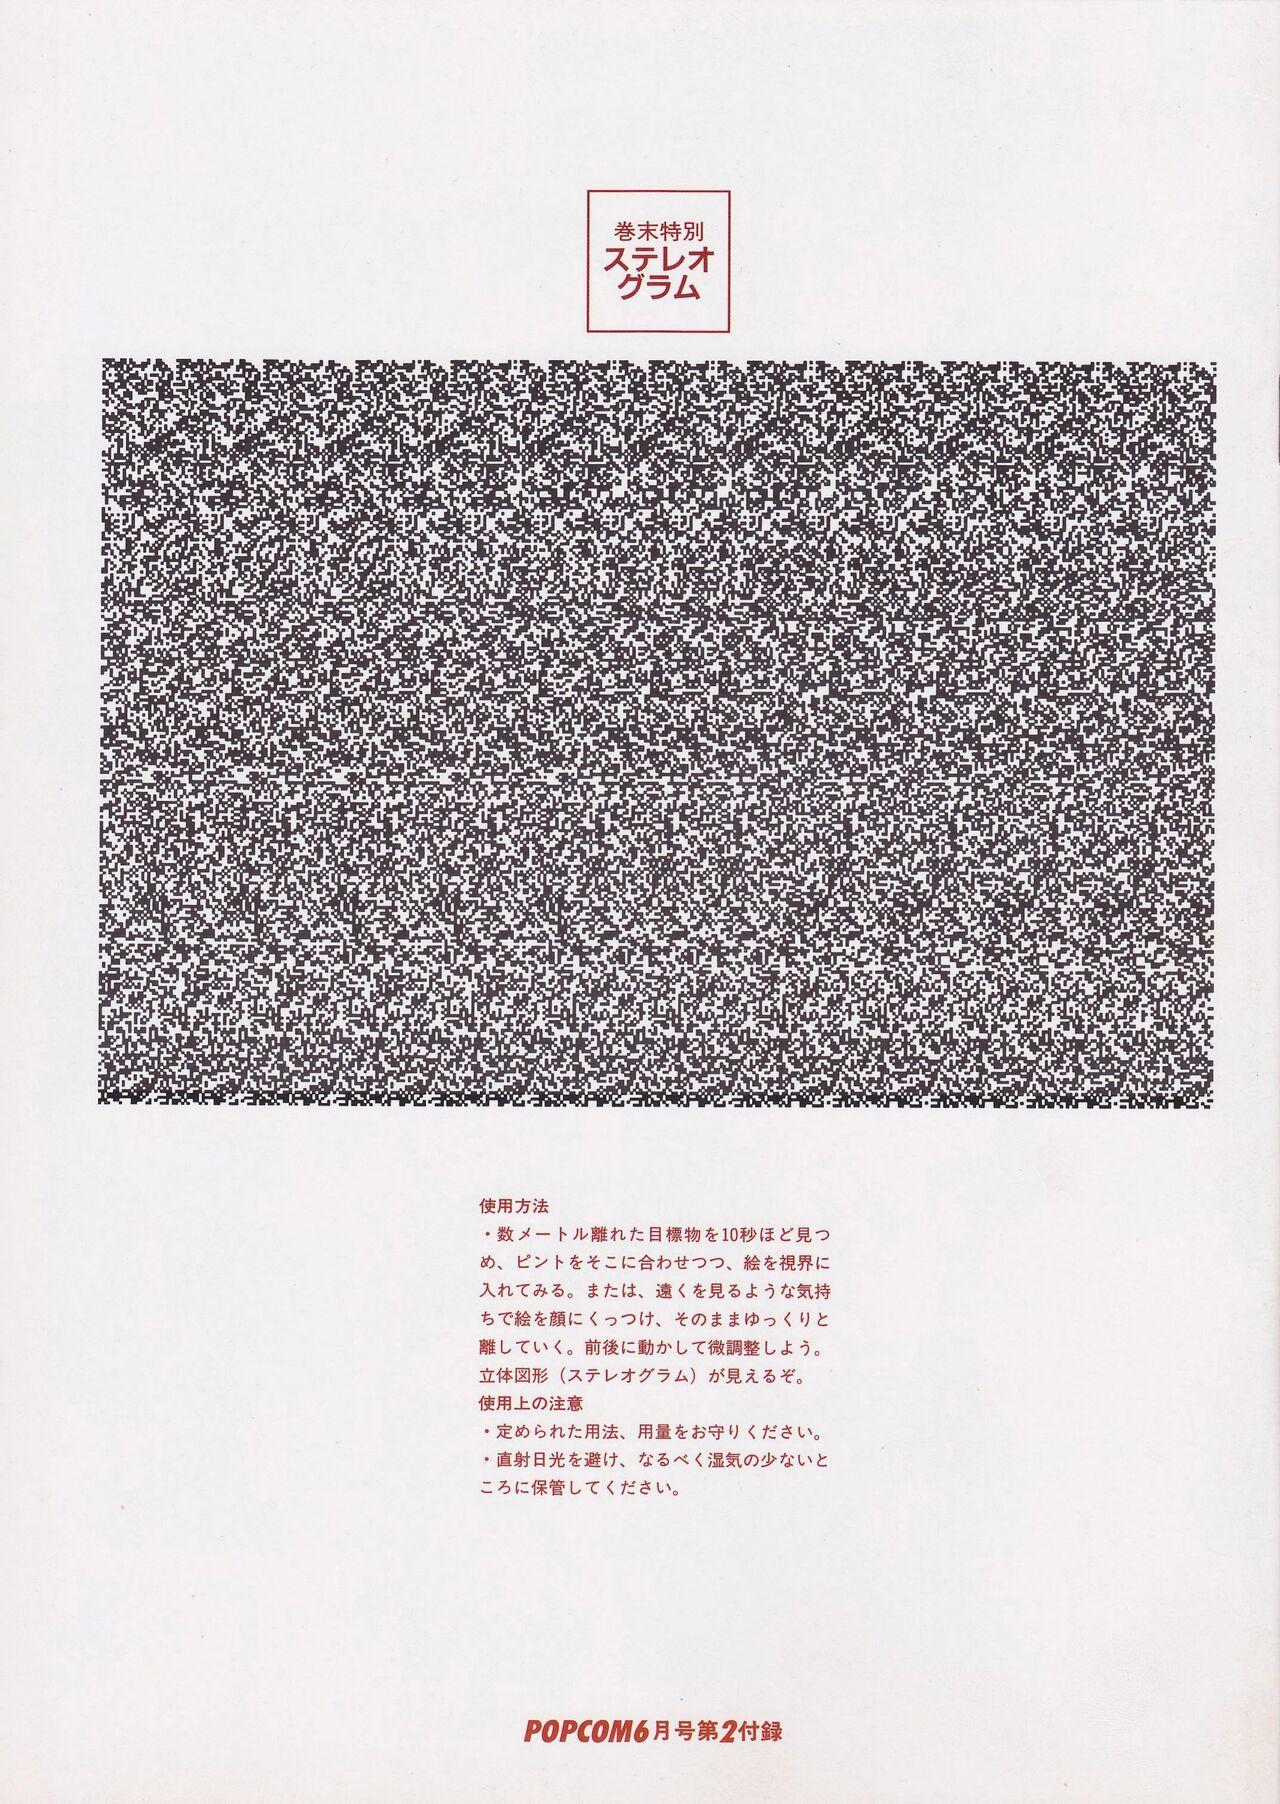 Bishoujo Seminar '93 DX Limited 19